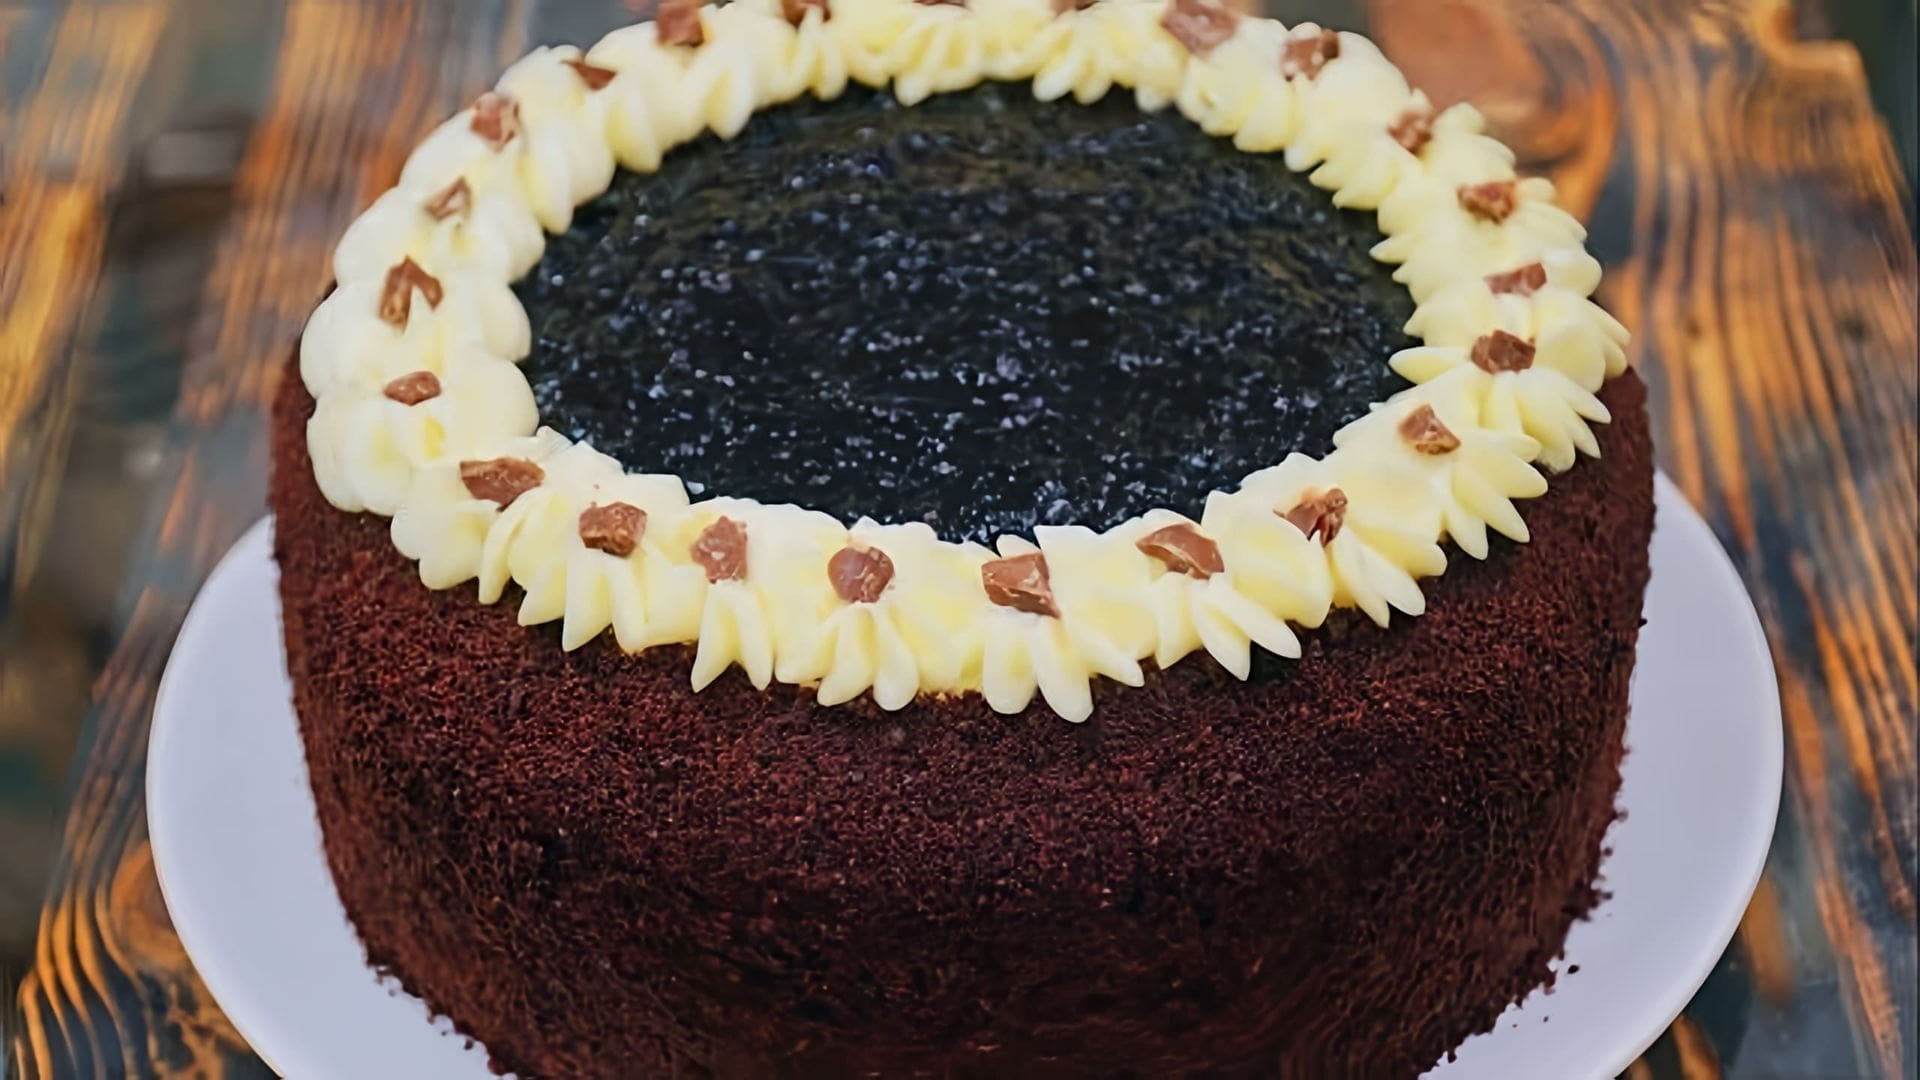 В этом видео Таня показывает рецепт приготовления торта "Звездная ночь"